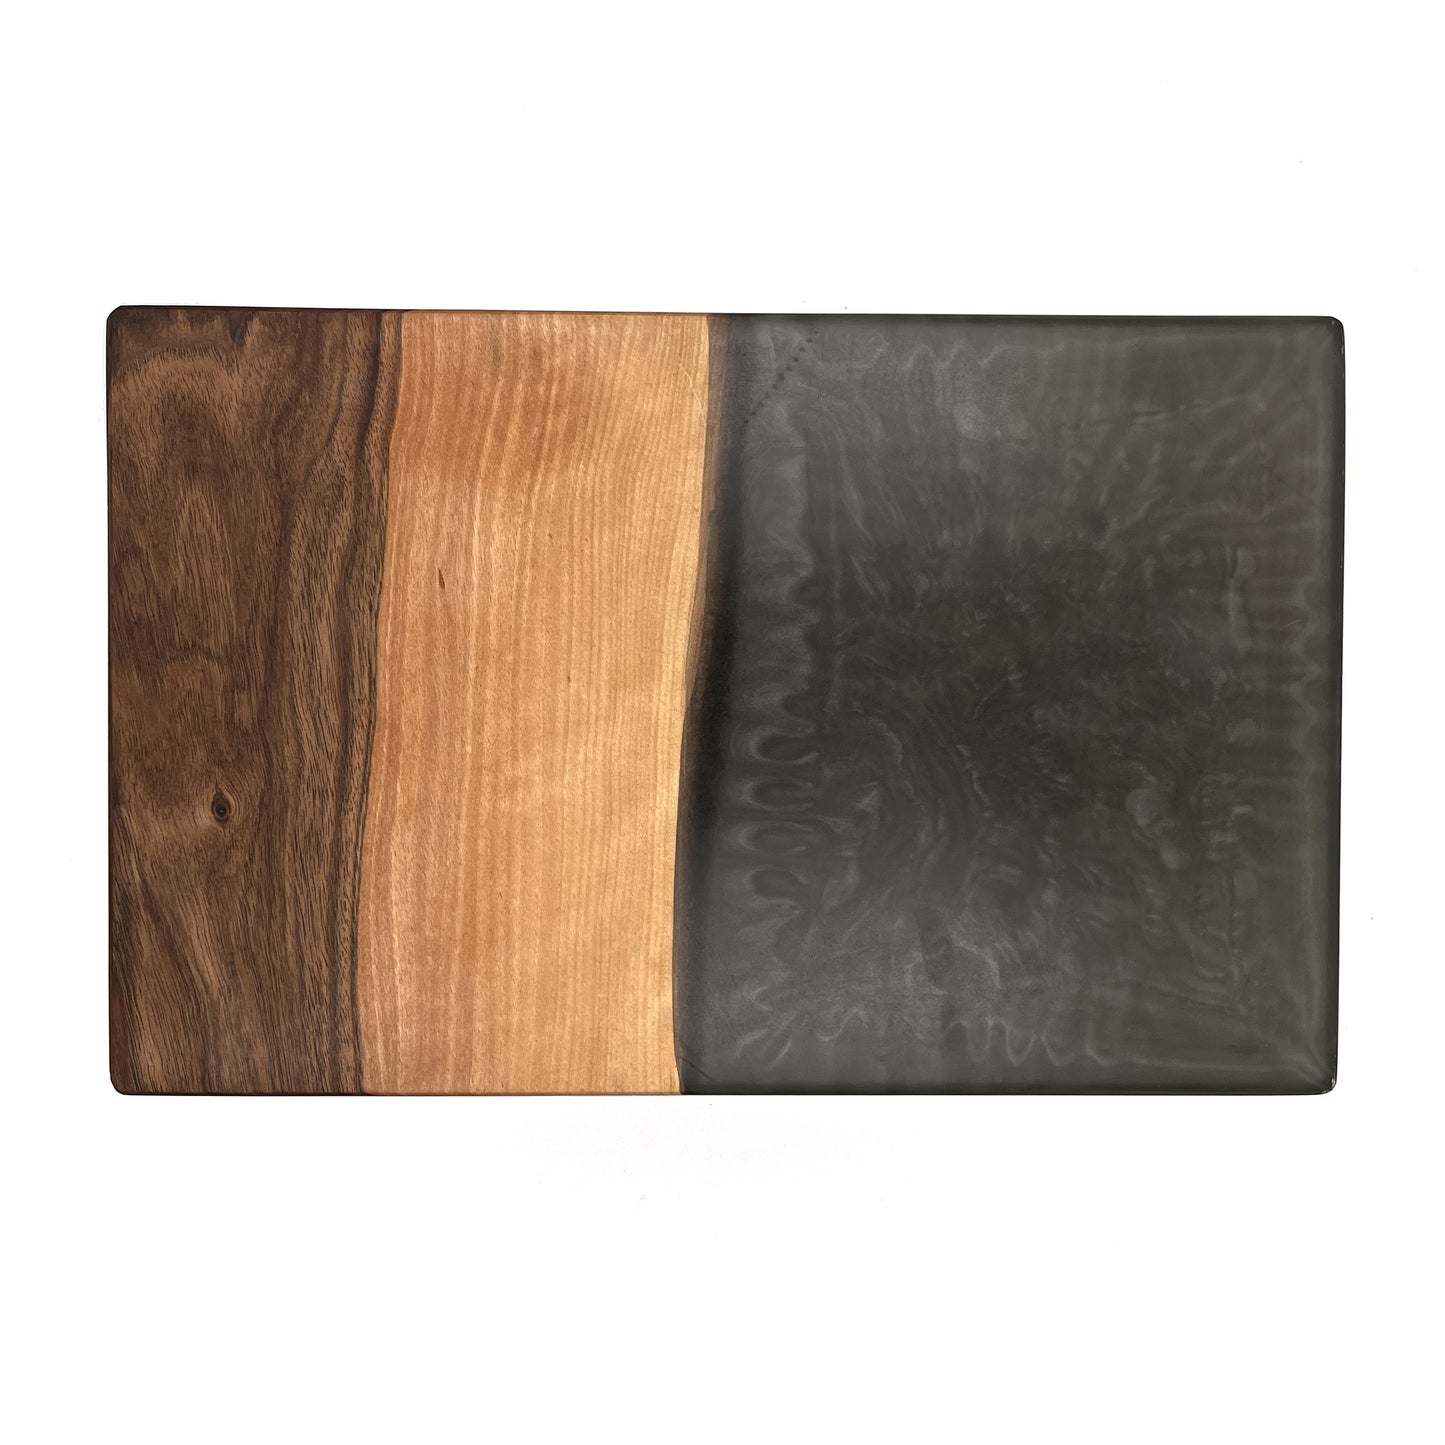 Stylish serving board in grey